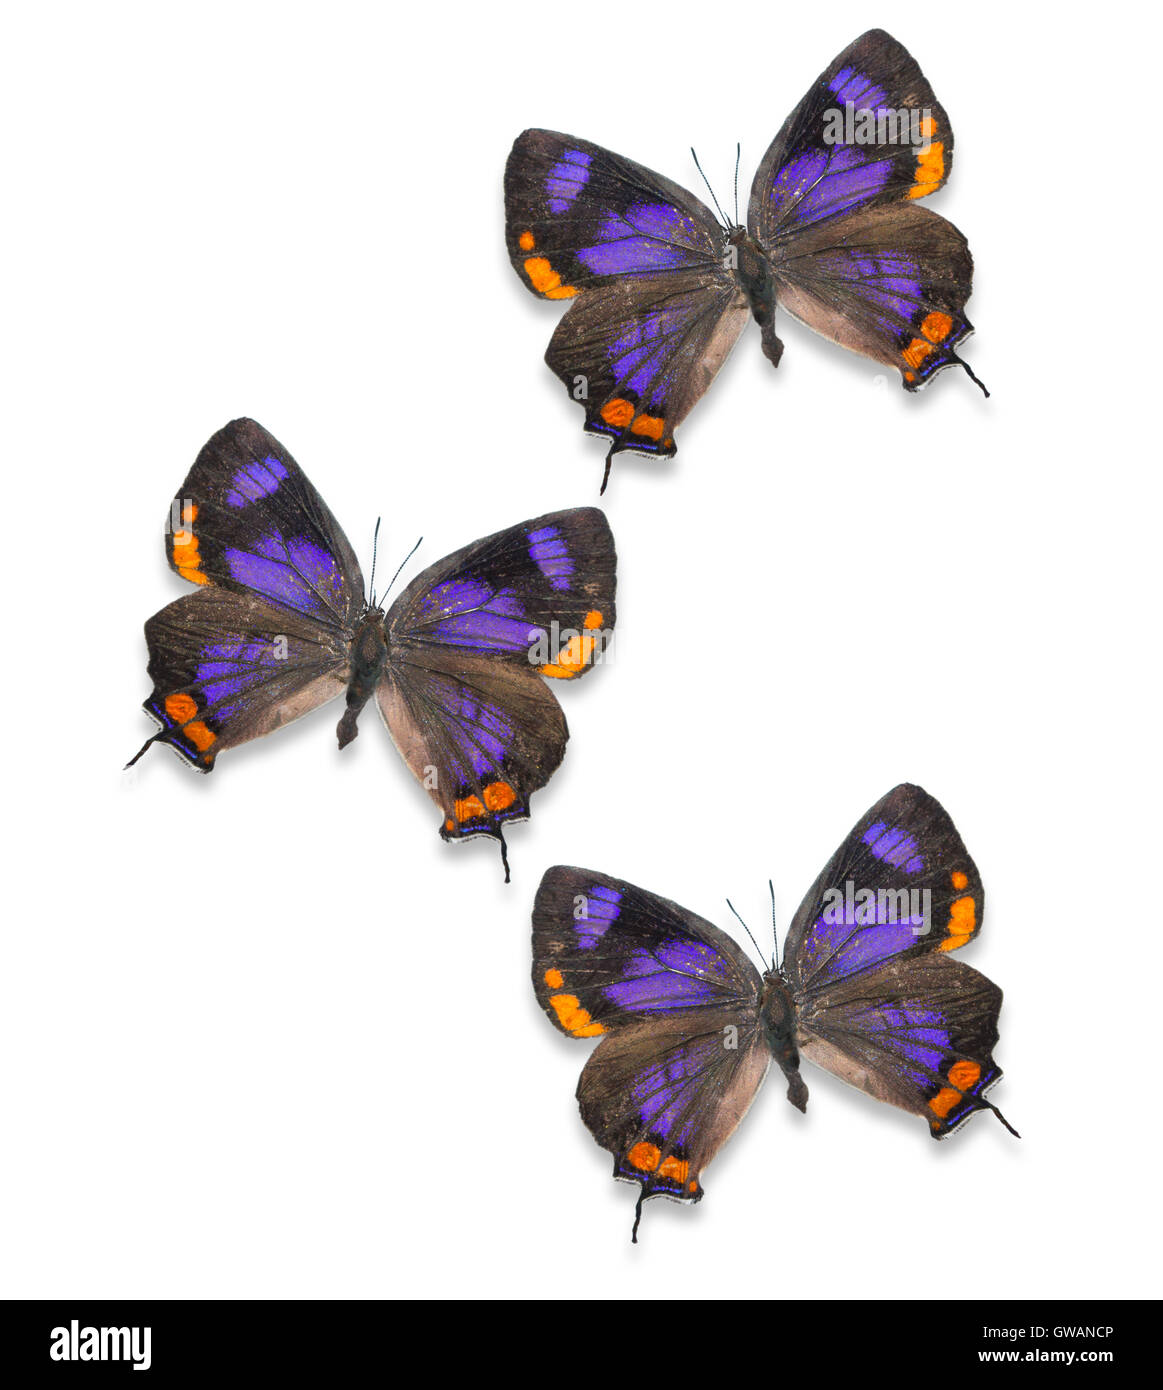 Festgeklemmte / ausgebreitete / montierte Colorado Hairstreak-Schmetterlinge (Hypaurotis crysalus) / Exemplare / Ausschnitte auf weißem Hintergrund Stockfoto